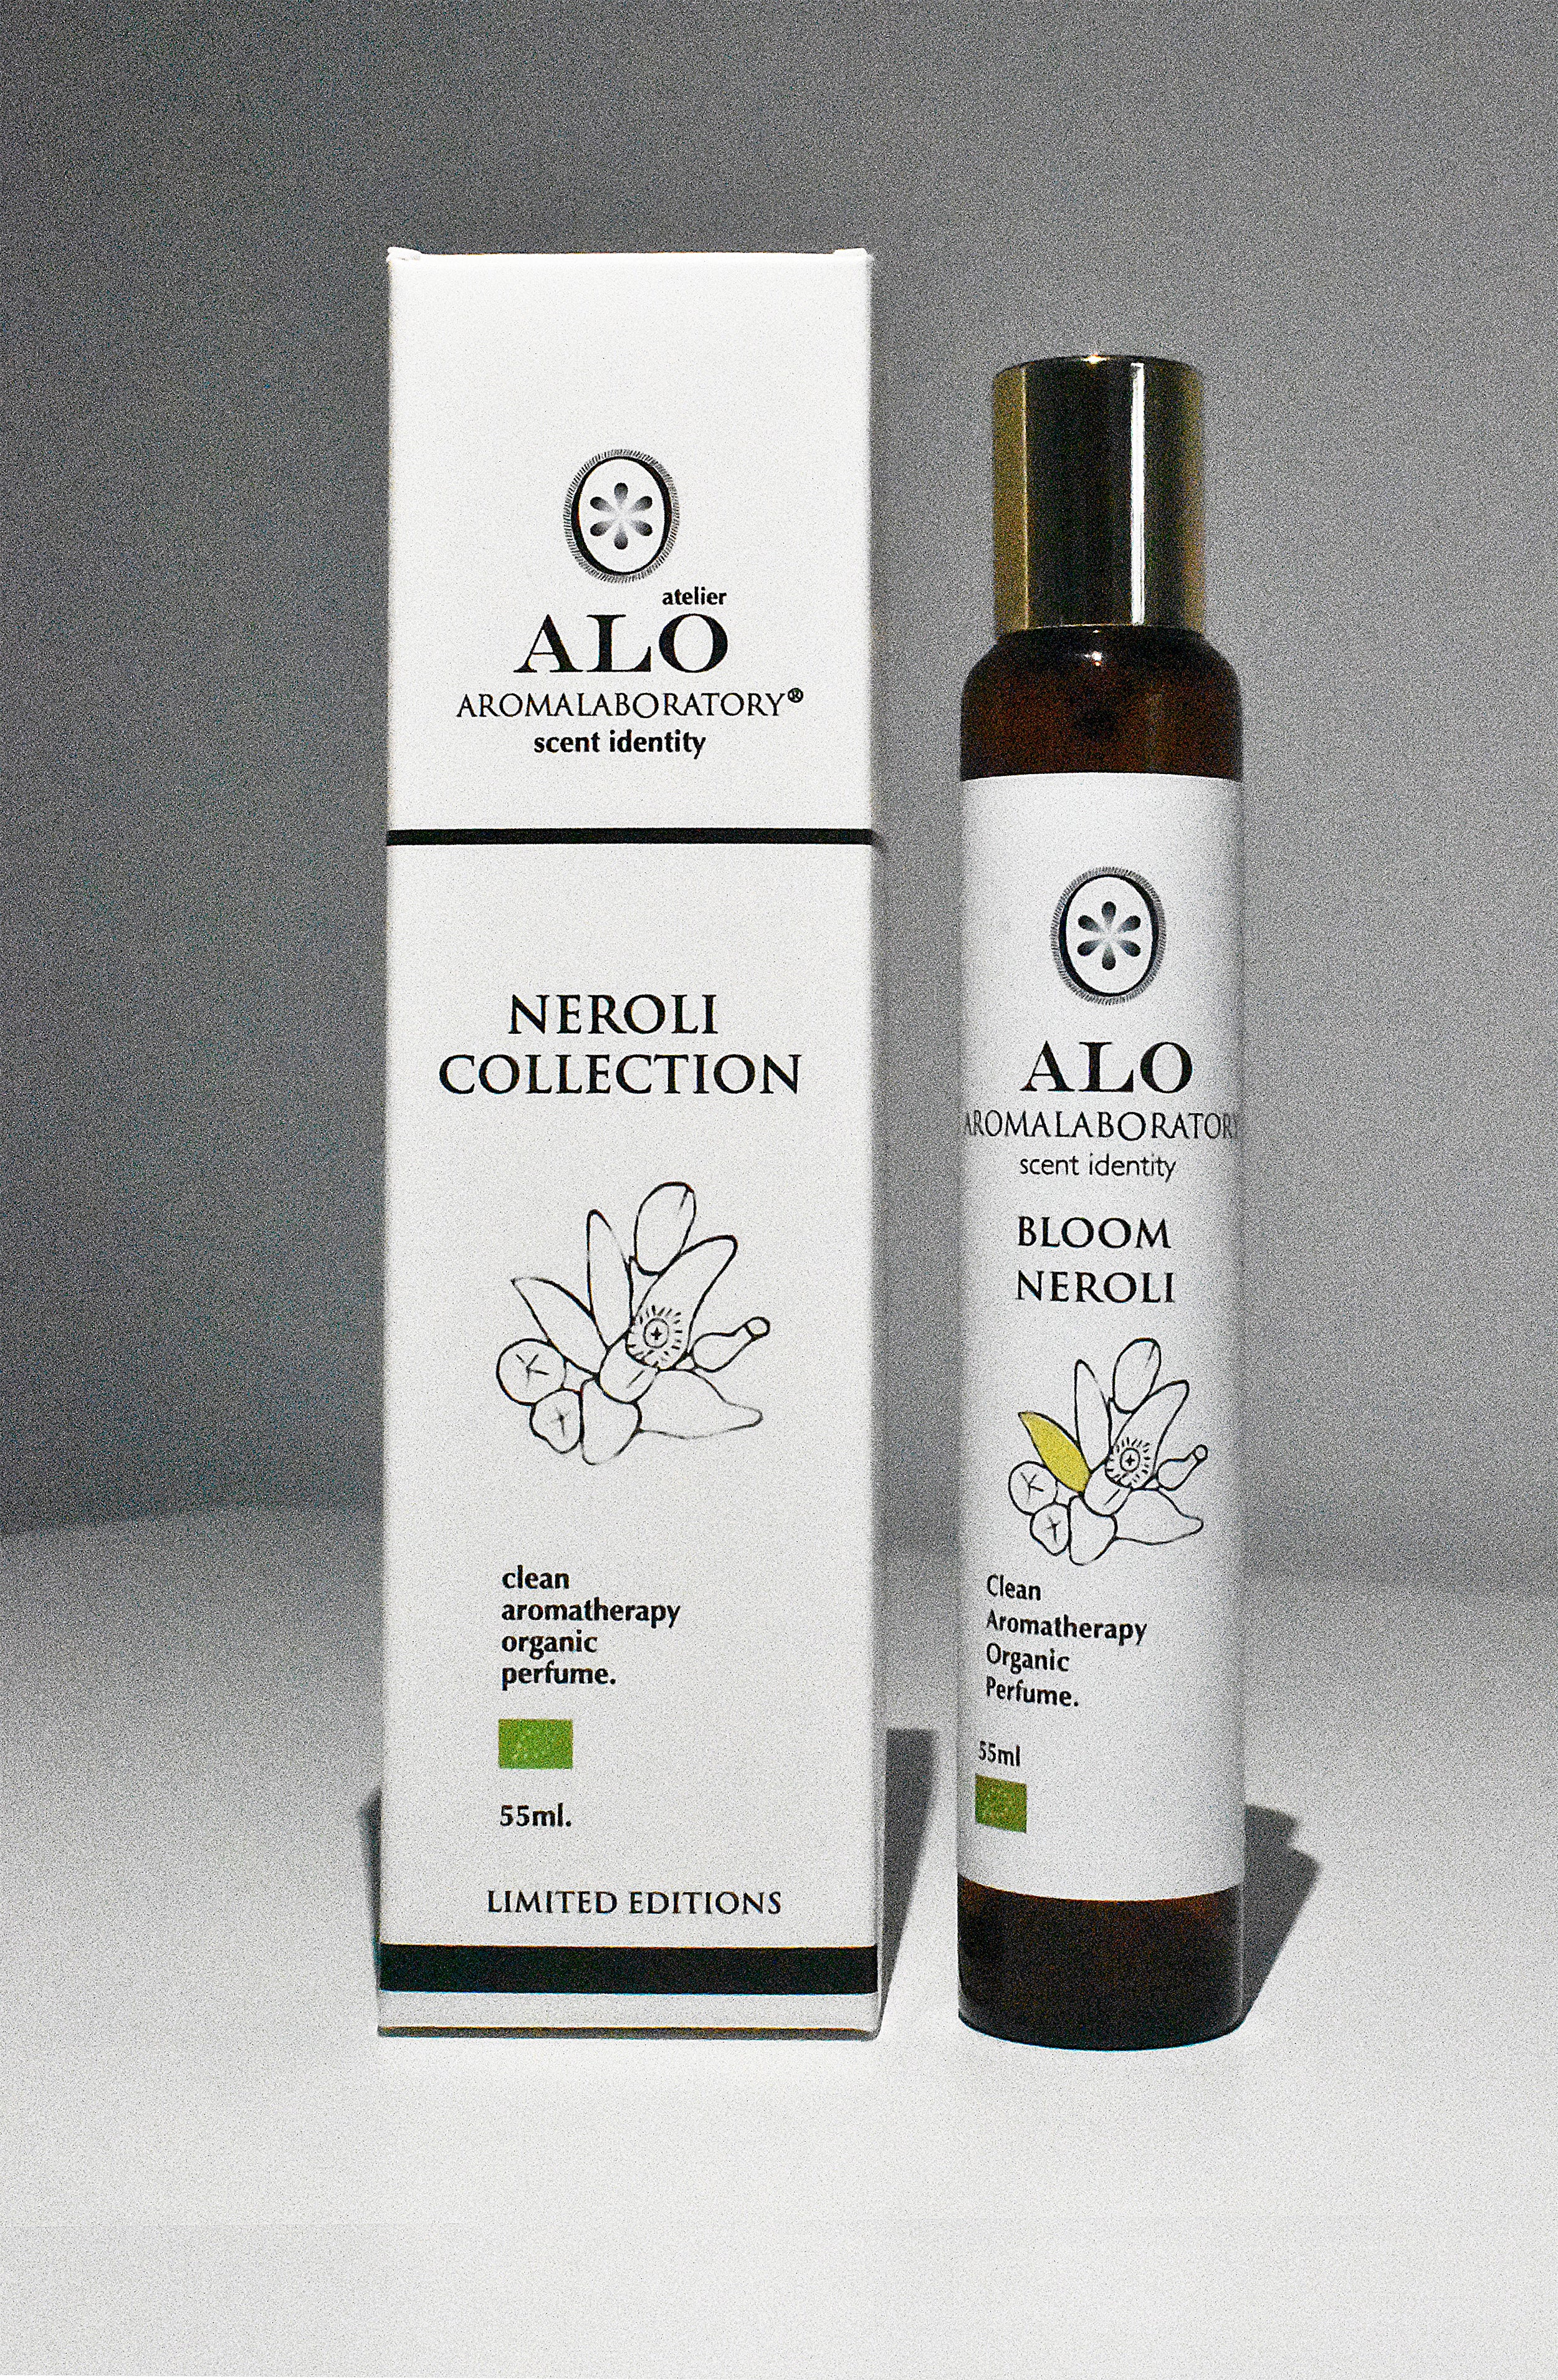 BLOOM NEROLI. Aromatherapy Clean Perfume. Organic. 55ml.